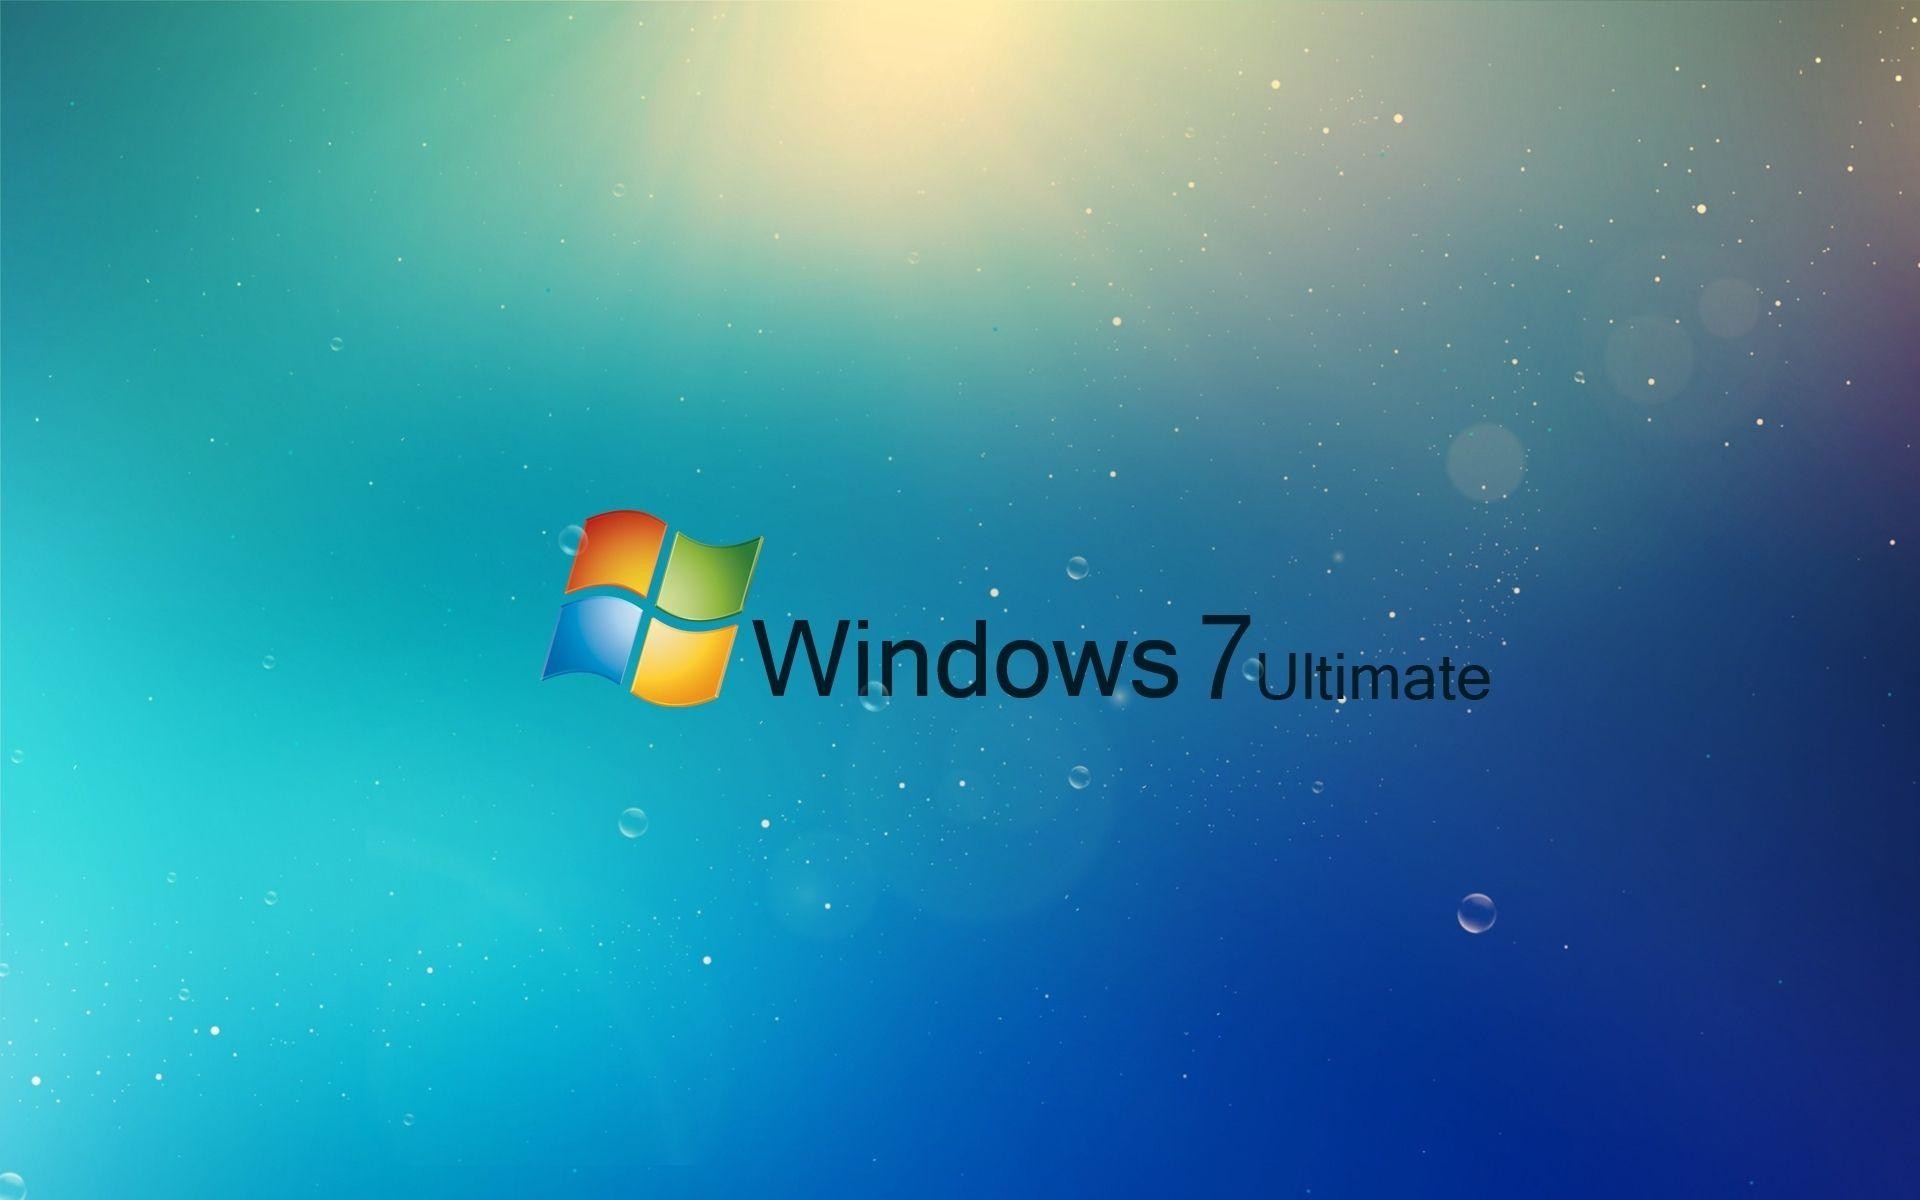 Có một hình nền Windows 7 Ultimate tốt nhất đang chờ đợi bạn. Hình nền này tuyệt đẹp và hoàn toàn miễn phí. Tất cả những gì bạn cần làm là đăng nhập và tải xuống ngay từ bây giờ. 